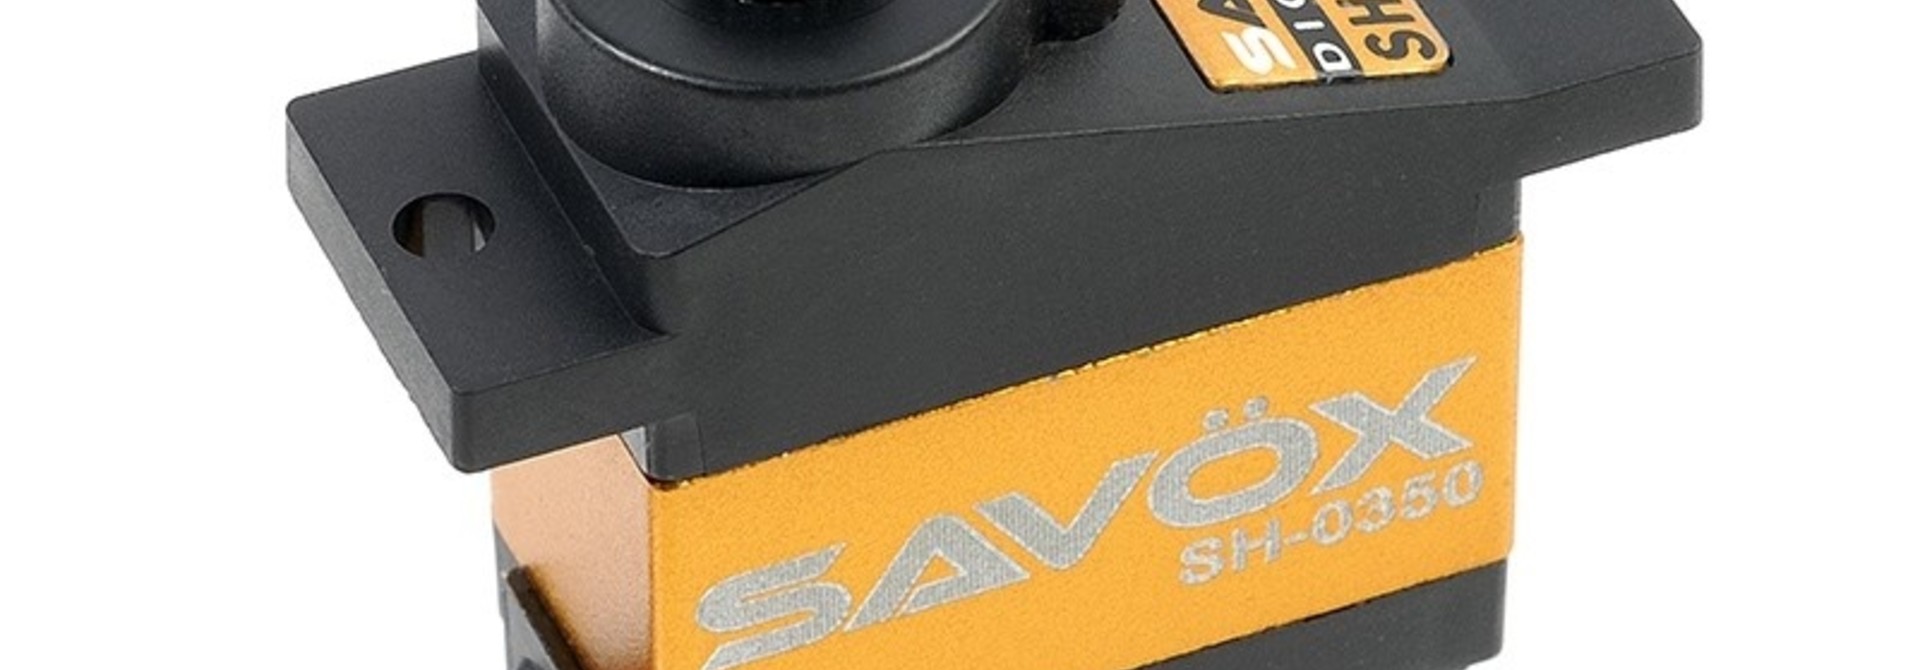 Savox - Servo - SH-0350 - Digital - DC Motor